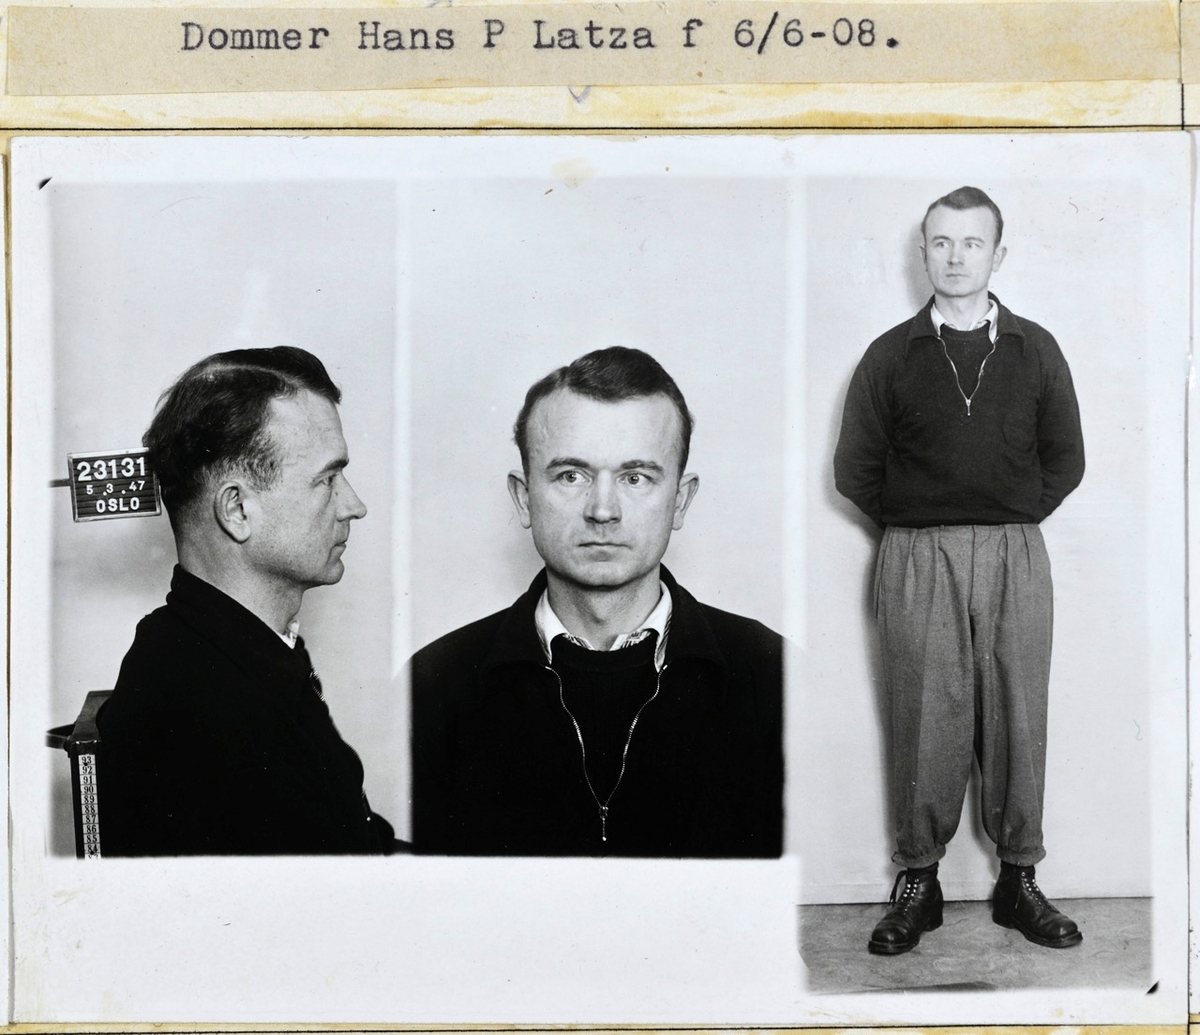 Forbryterportrett av dommer Hans P. Latza